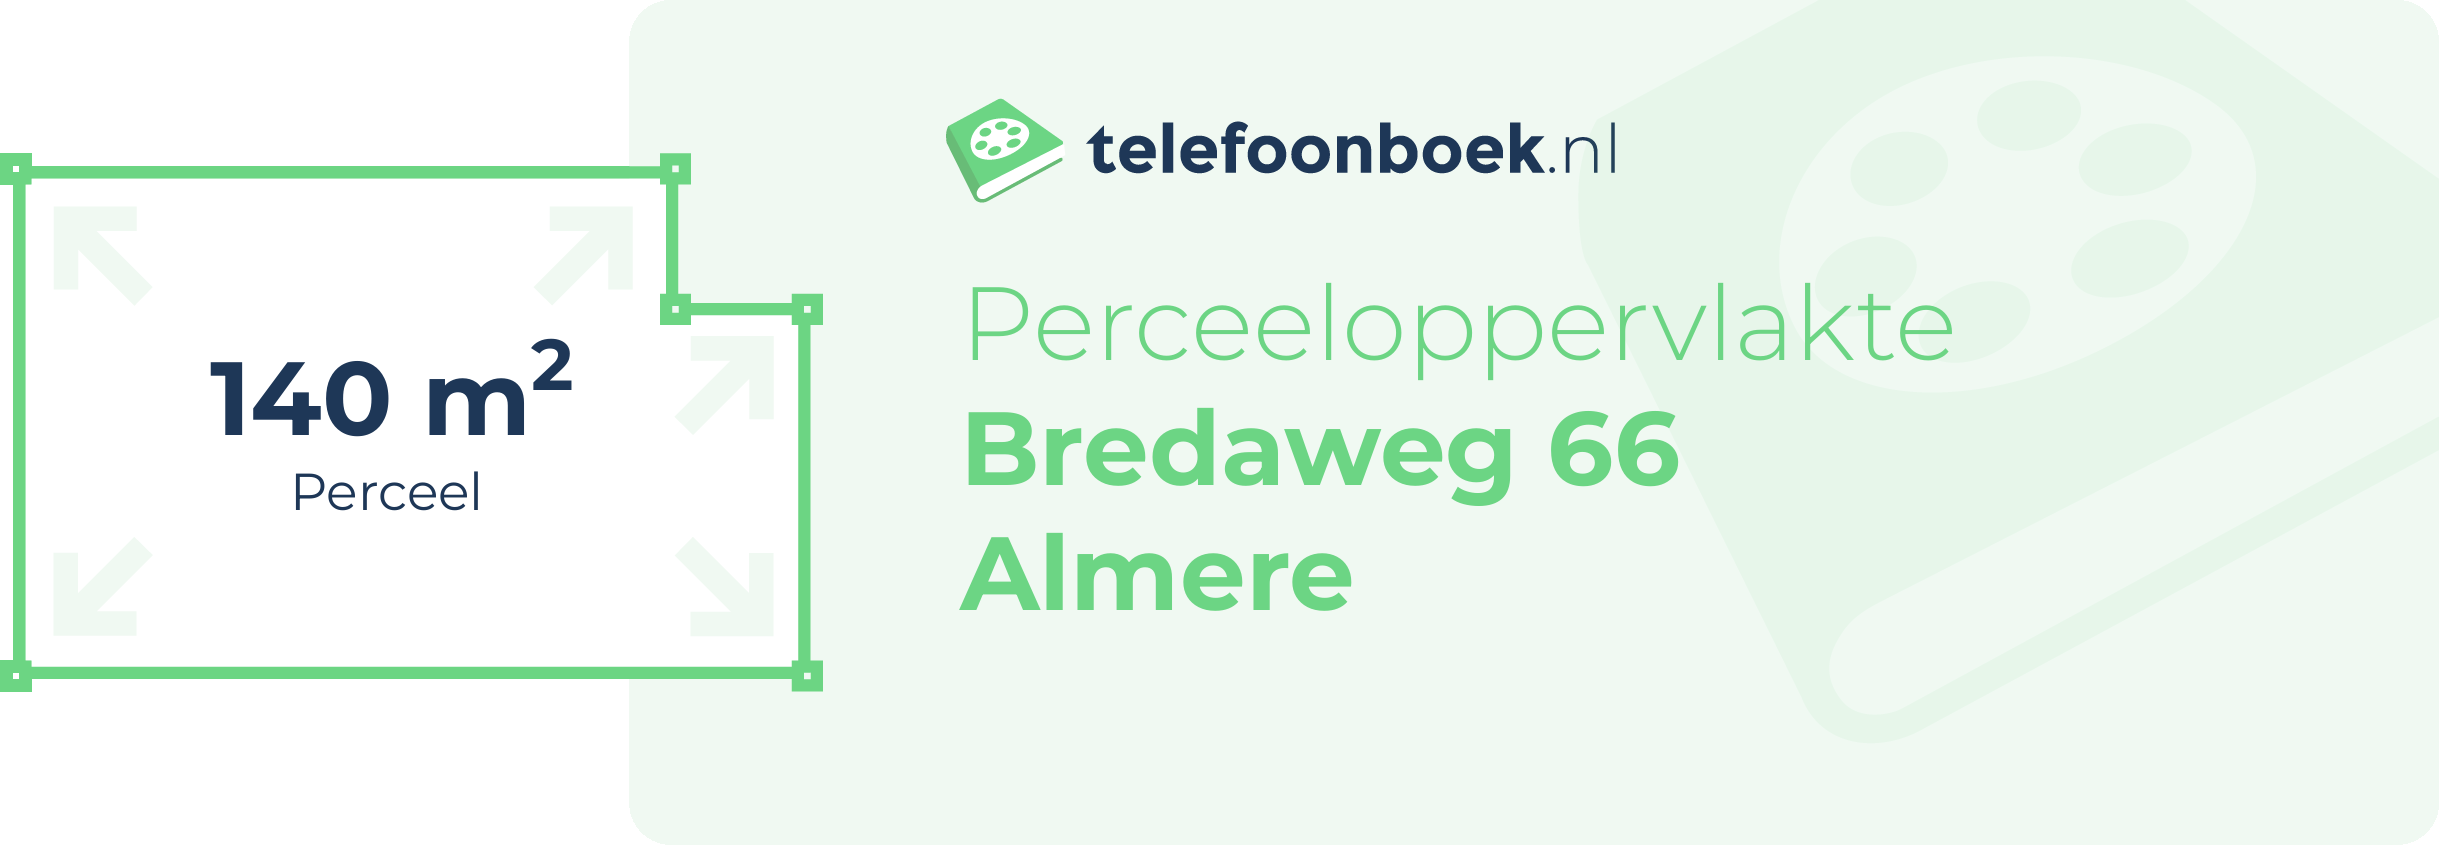 Perceeloppervlakte Bredaweg 66 Almere